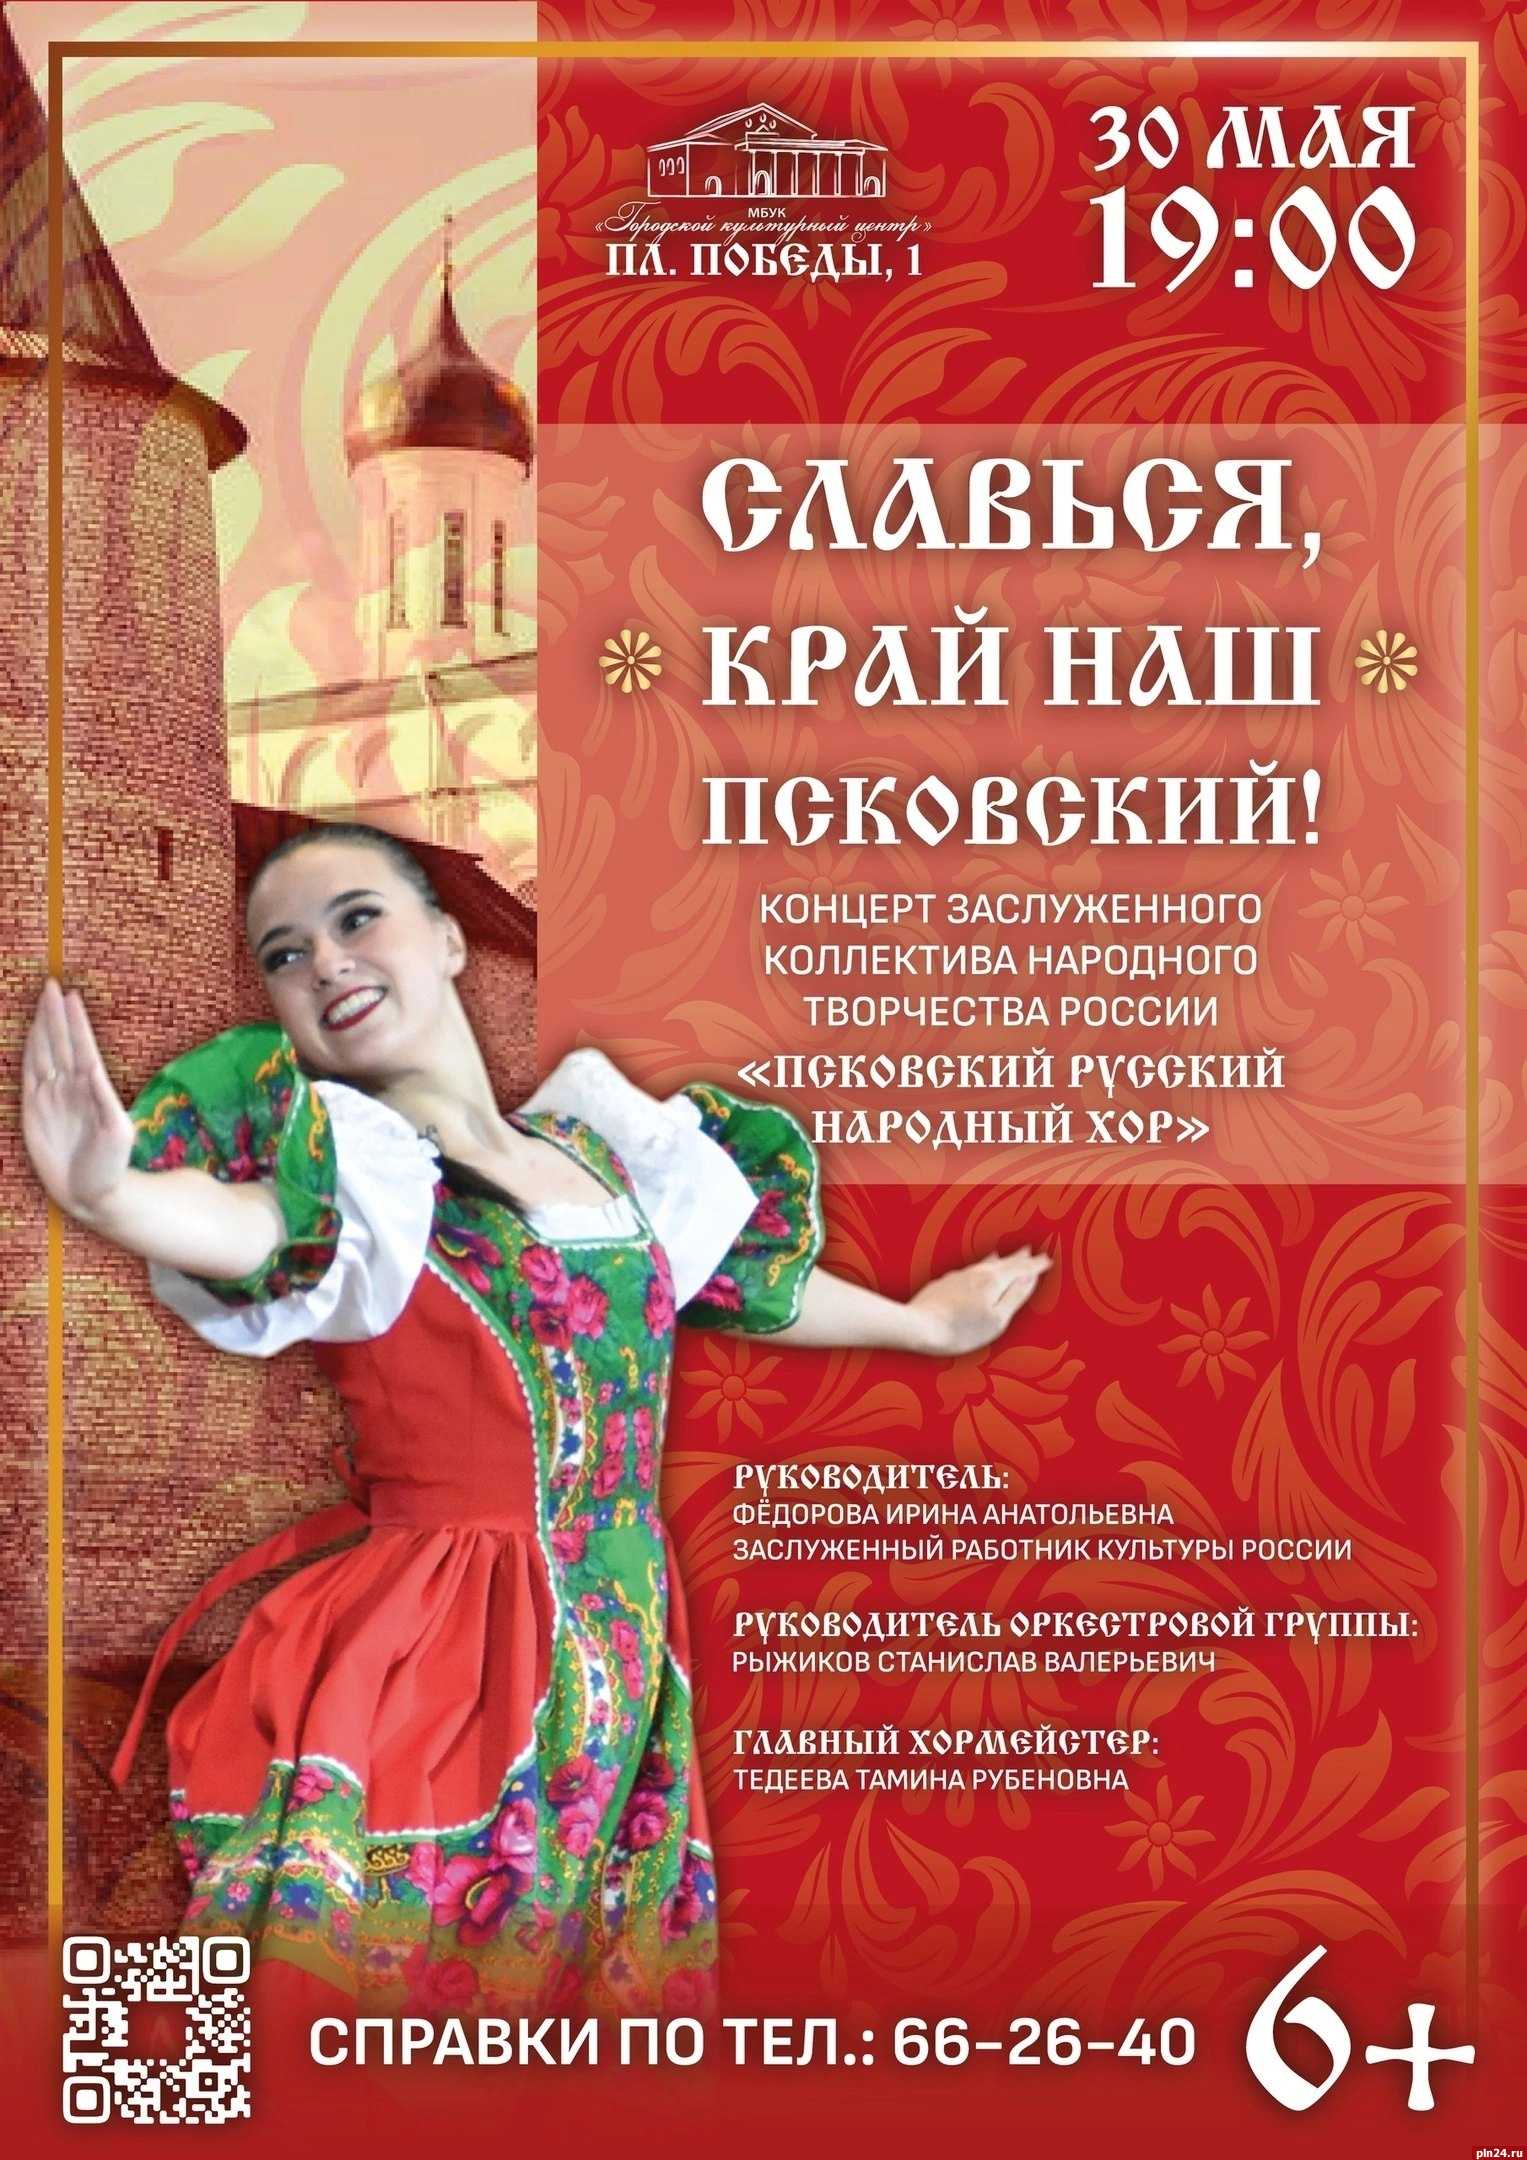 Псковский русский народный хор даст концерт 30 мая